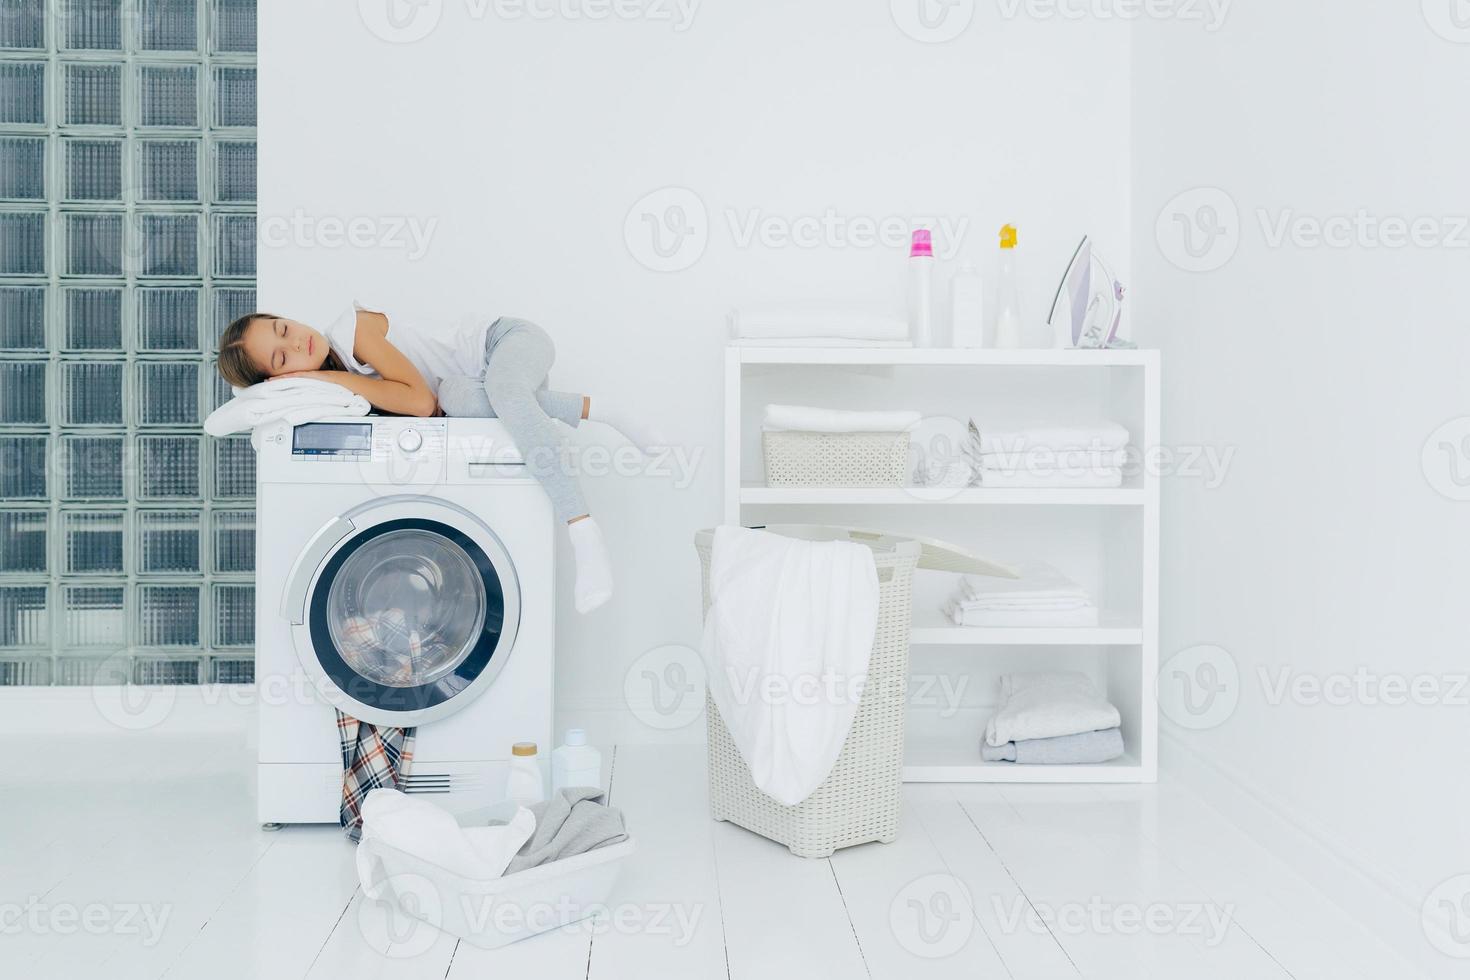 vrouwelijke kleuter slaapt op de wasmachine, is moe van het wassen, poseert in een witte grote wasruimte met een mand en een bekken vol vuile kleren, flessen vloeibaar poeder. kindertijd, huishoudelijke taken foto